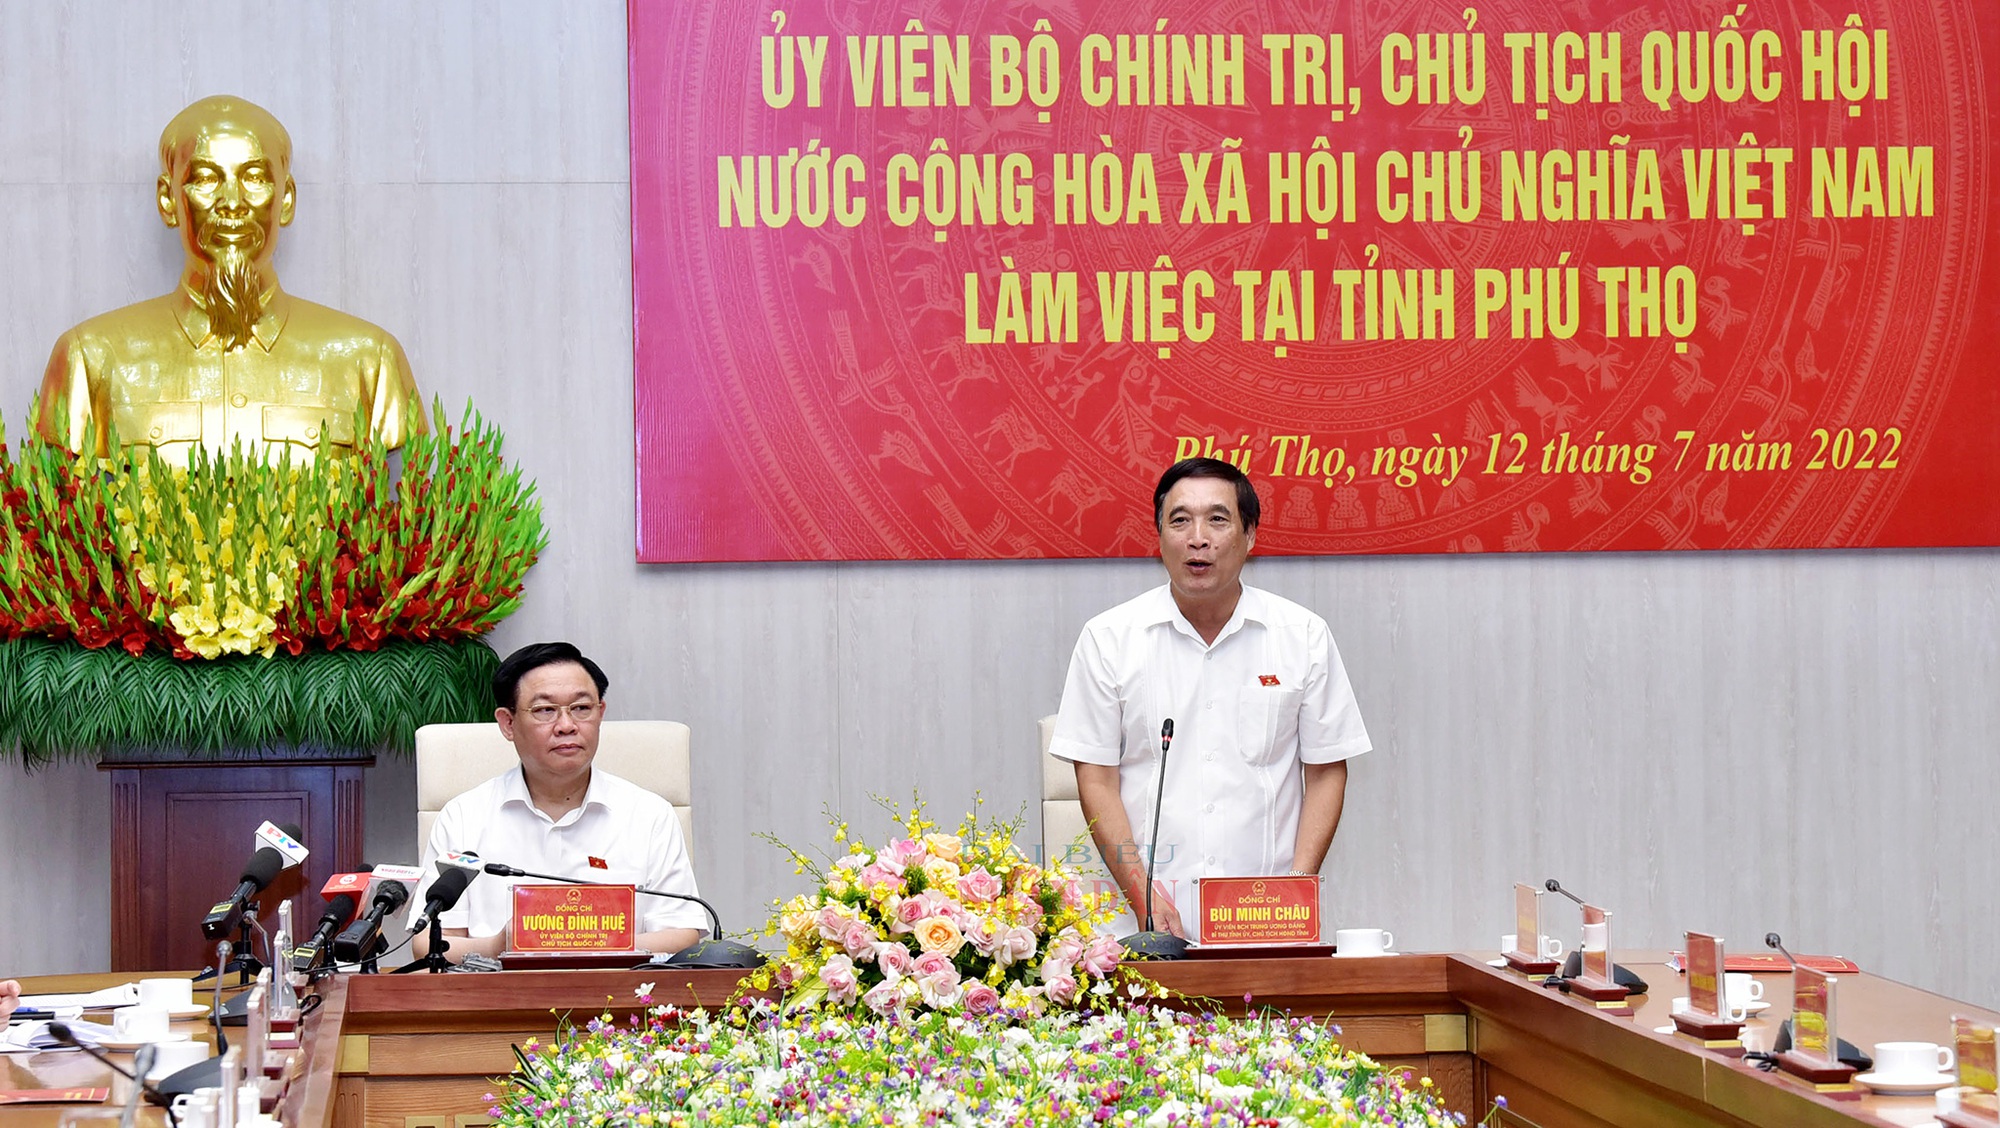 Chủ tịch Quốc hội Vương Đình Huệ: Phú Thọ sẽ sớm trở thành tỉnh dẫn đầu trong khu vực - Ảnh 3.